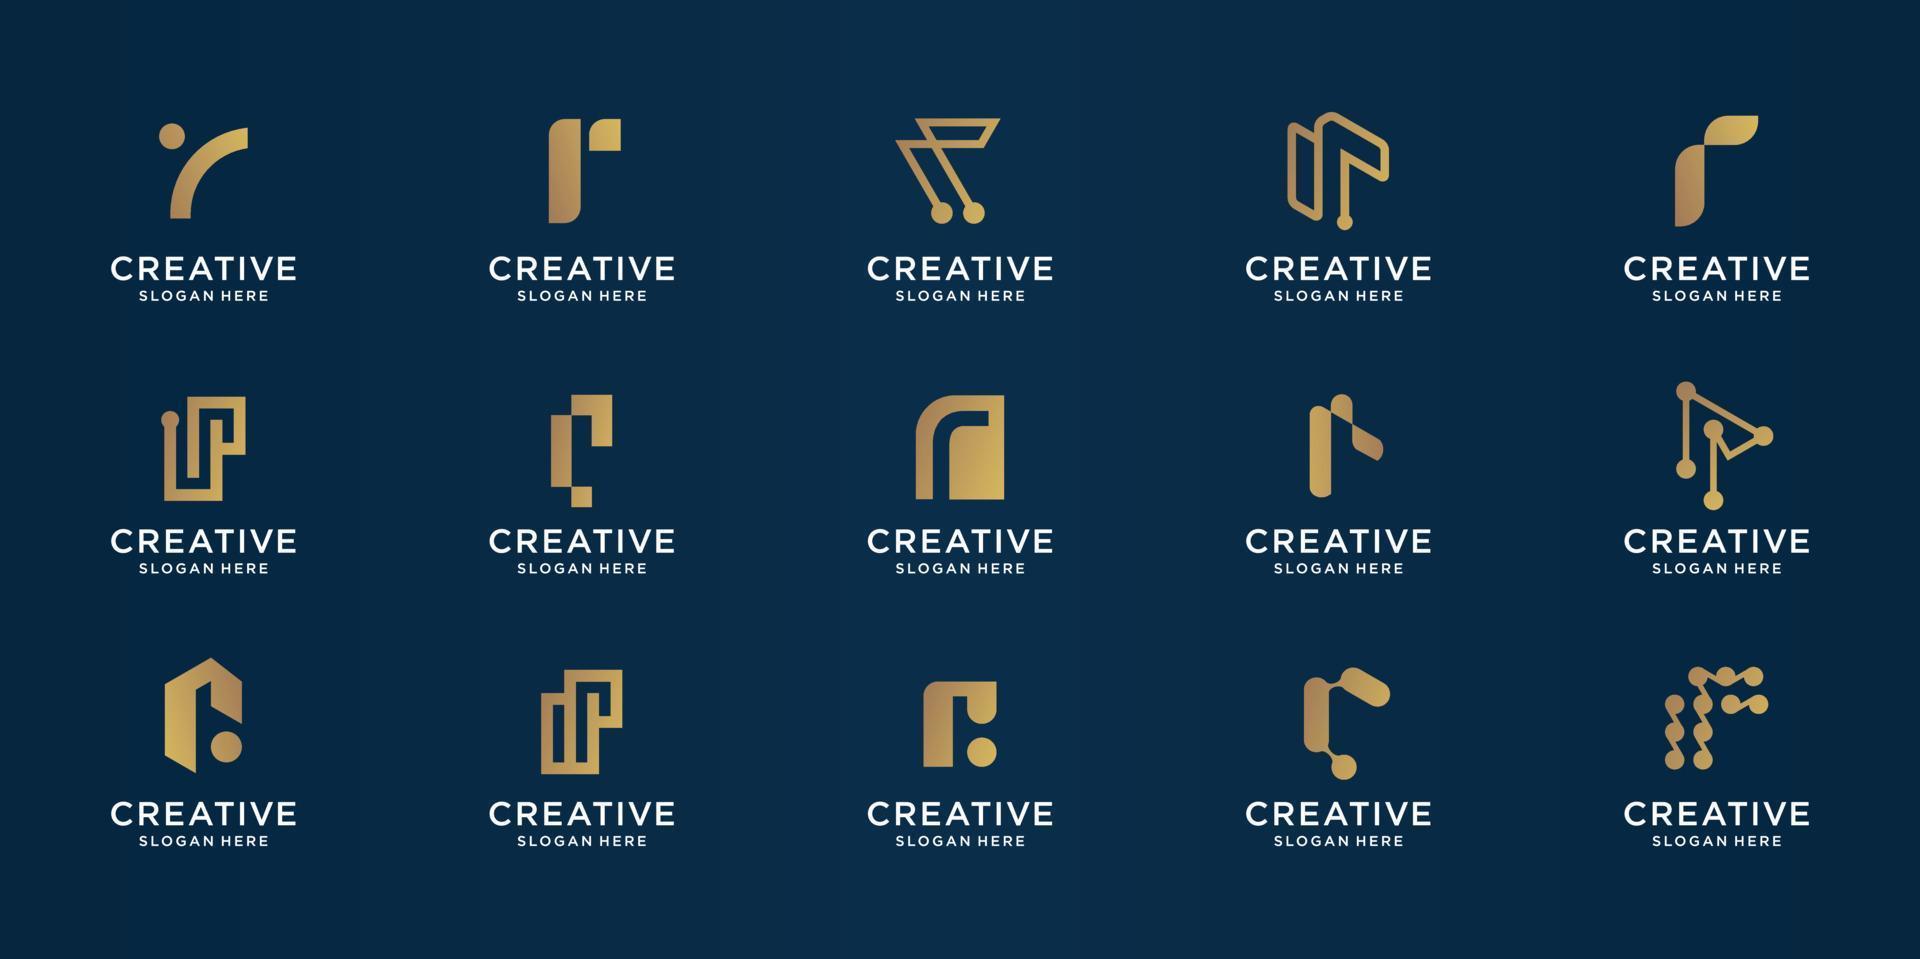 mega paquete de plantilla de diseño de oro de letra r creativa. iconos para business.technology,letra r,alfabeto,elegante, equilibrio. vector premium